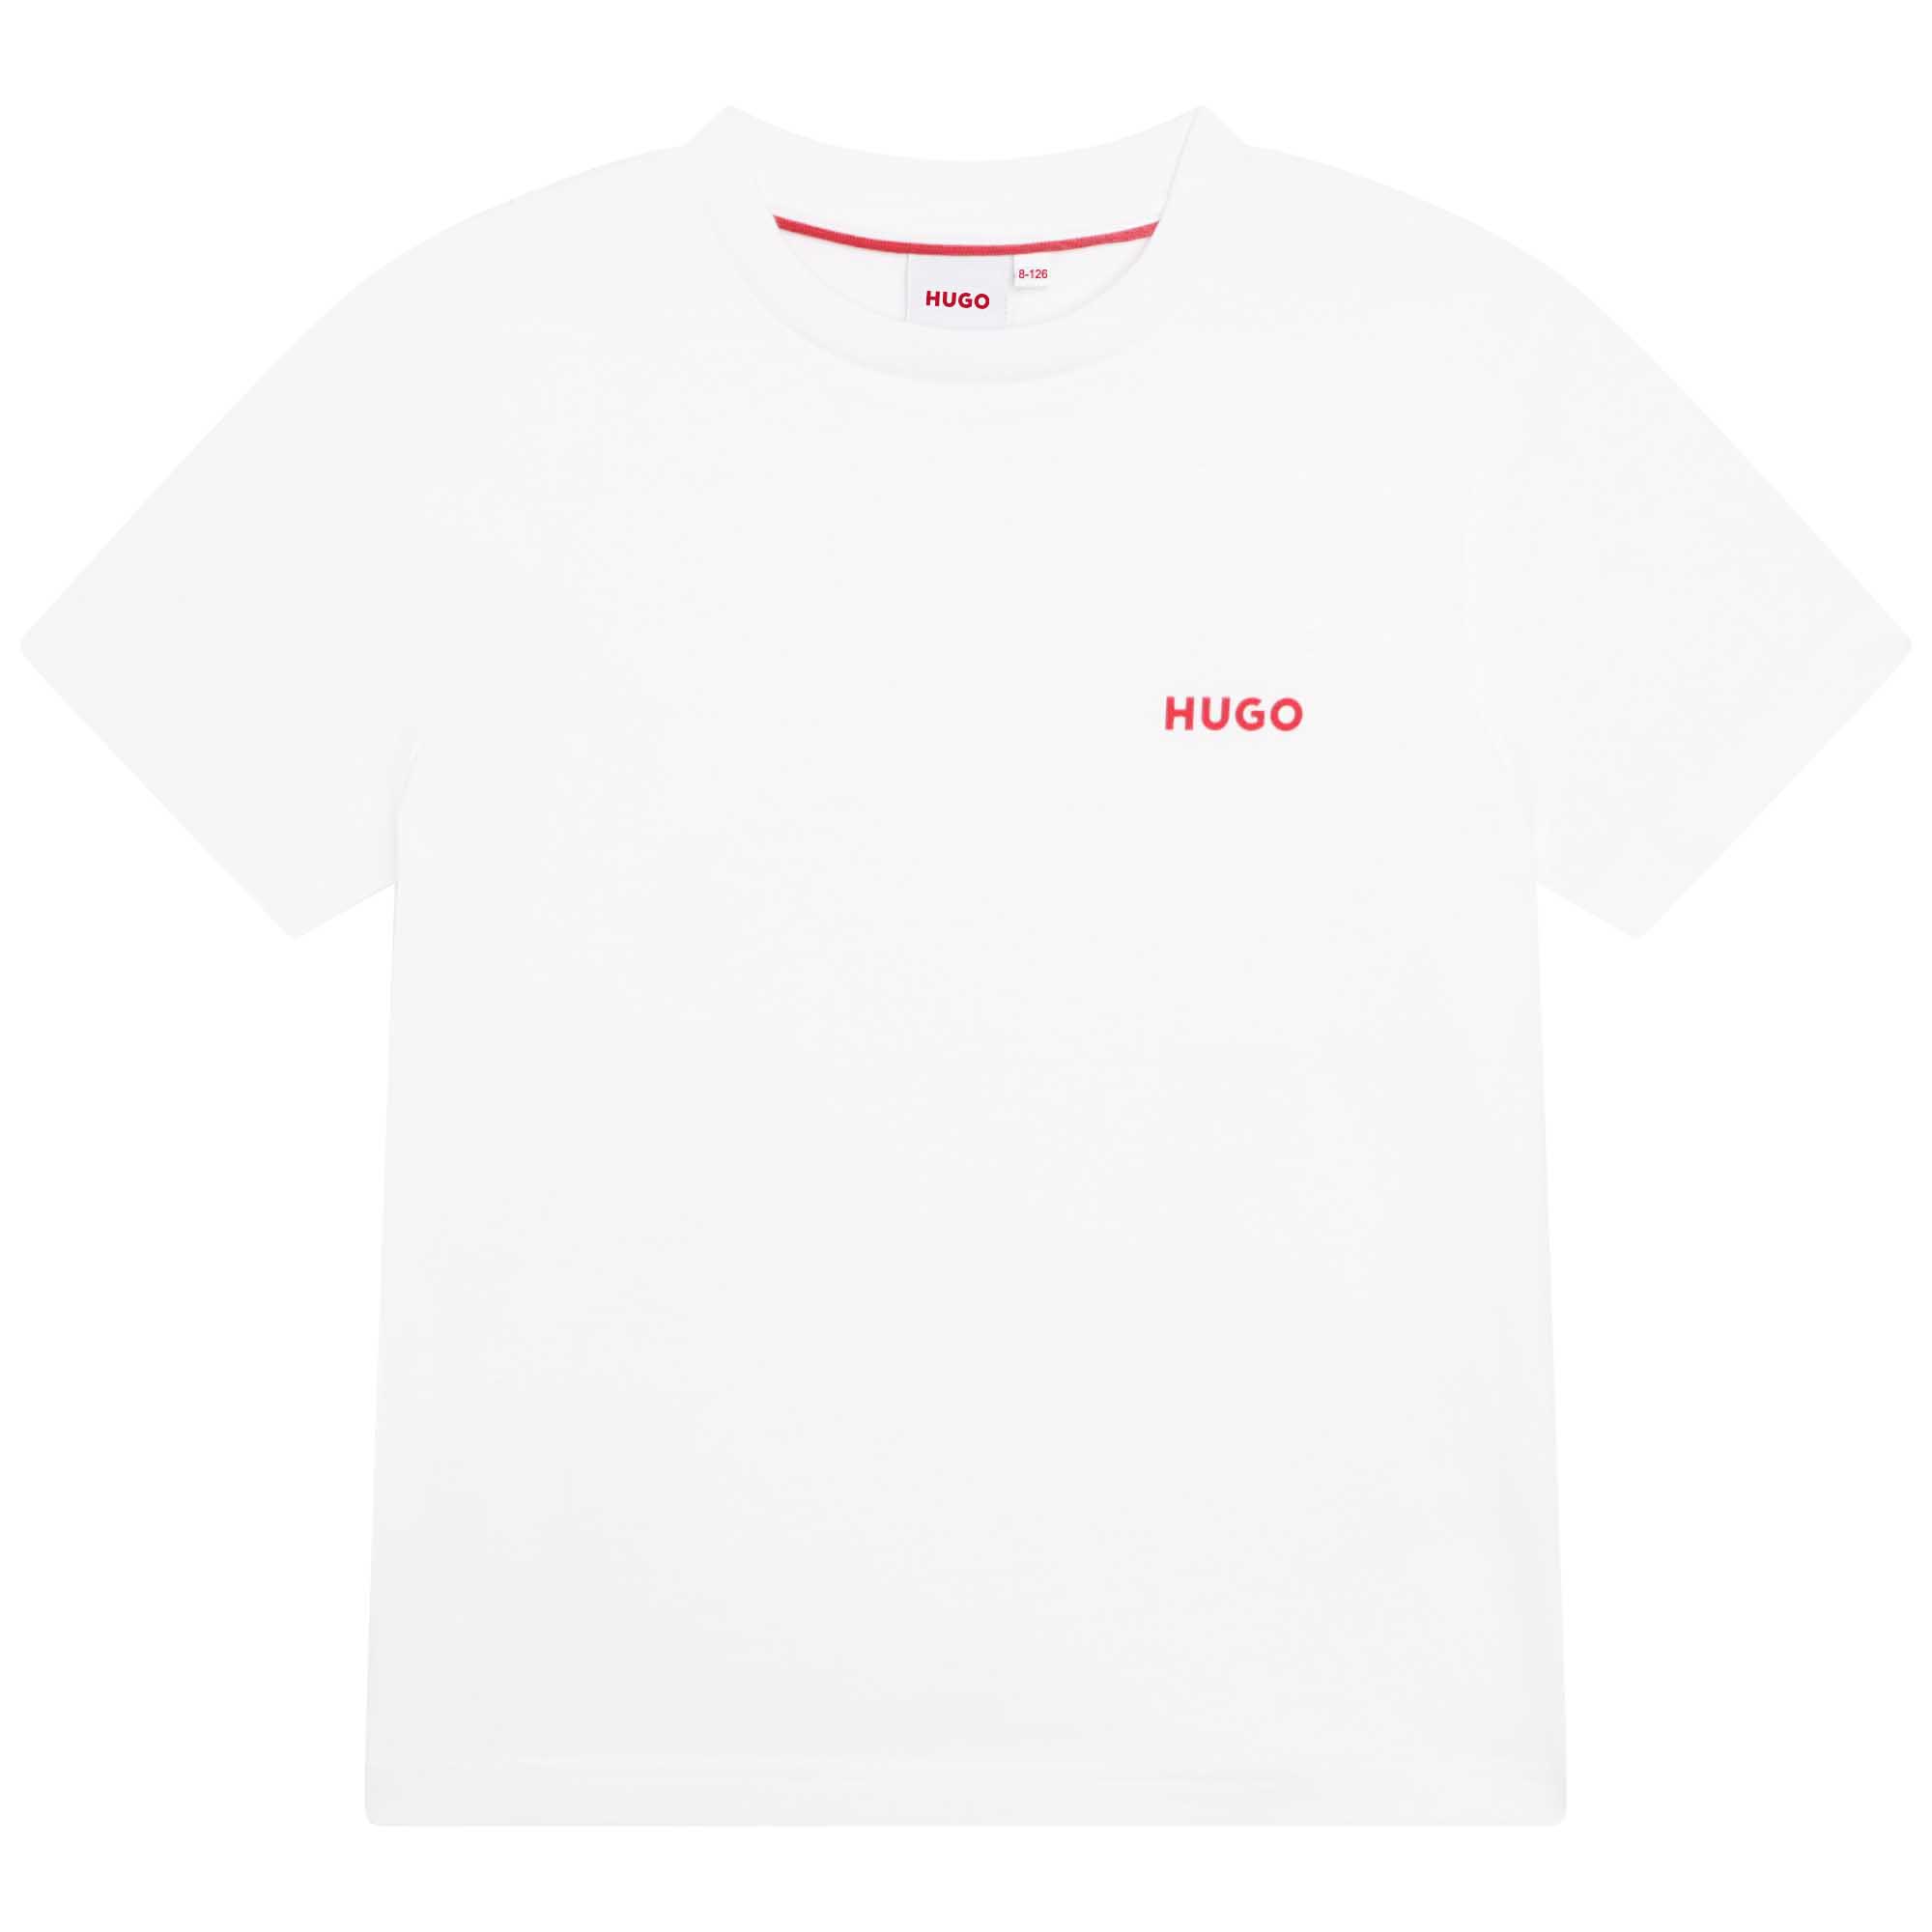 T-shirt met print voorop HUGO Voor